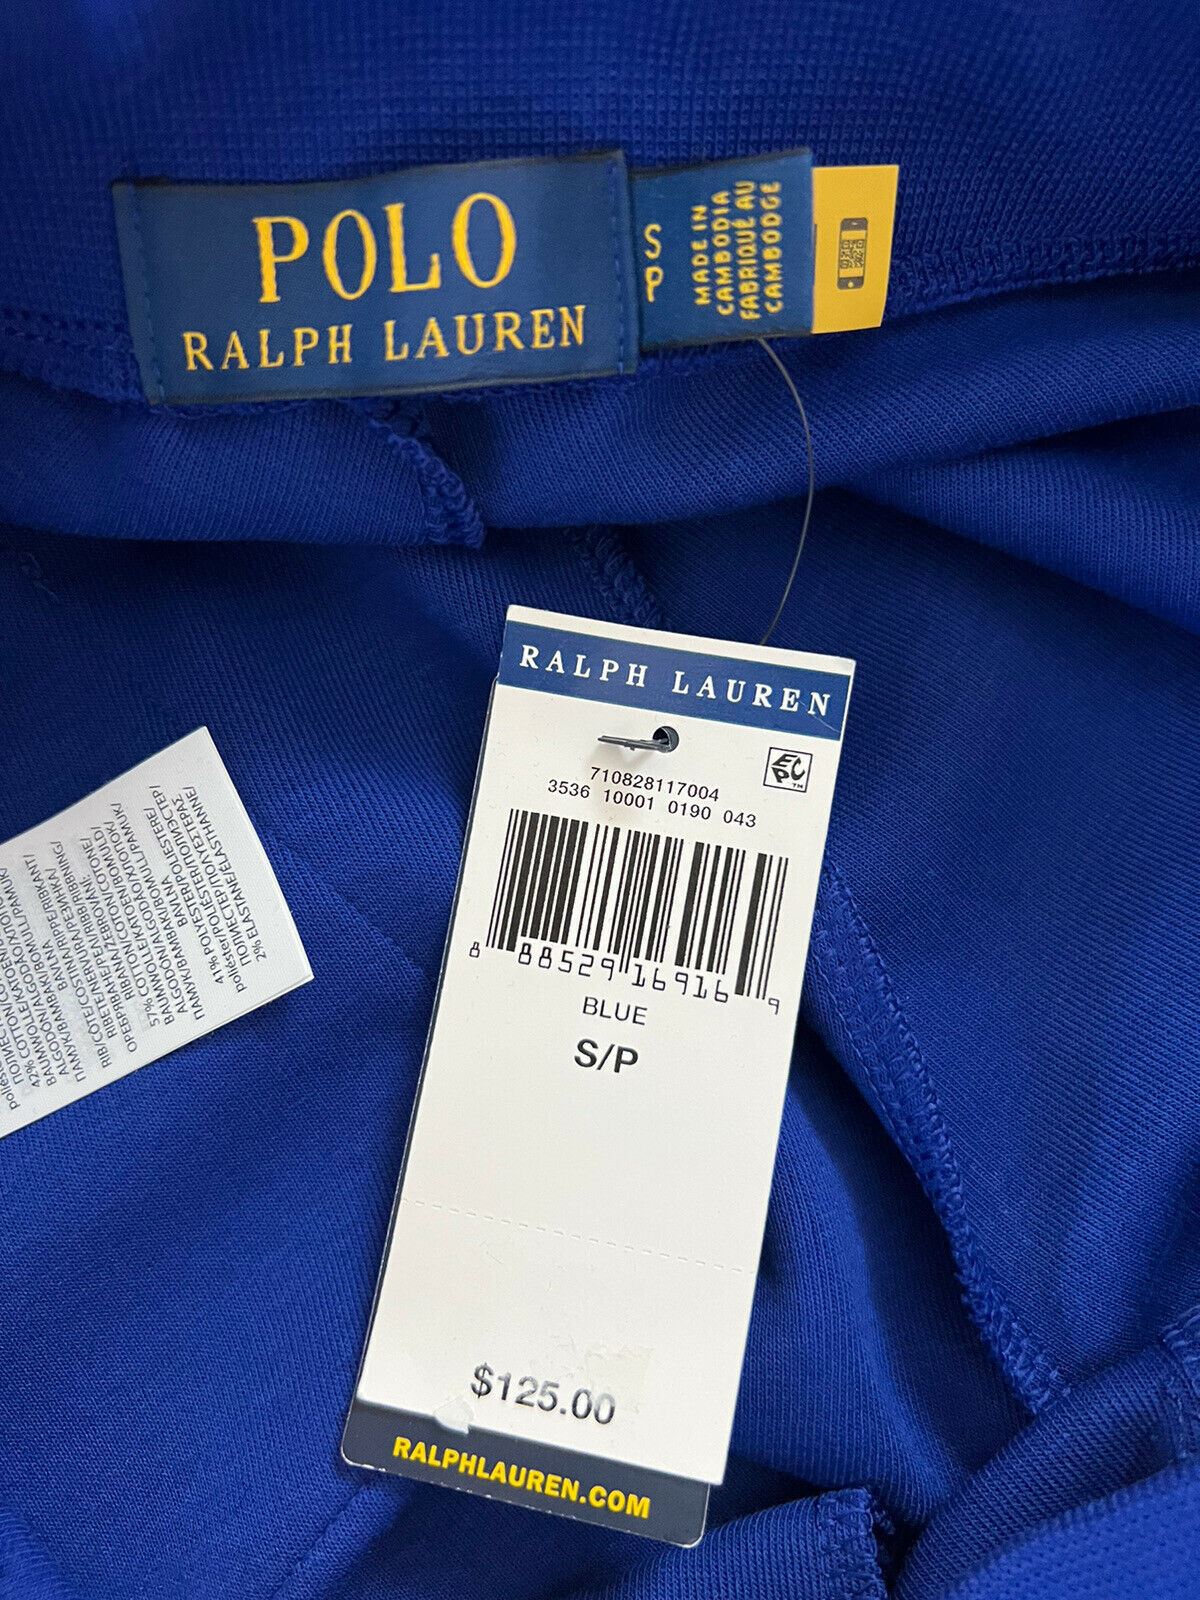 Мужские большие синие повседневные брюки с логотипом Polo Ralph Lauren, размер NWT 125 долларов США, маленькие